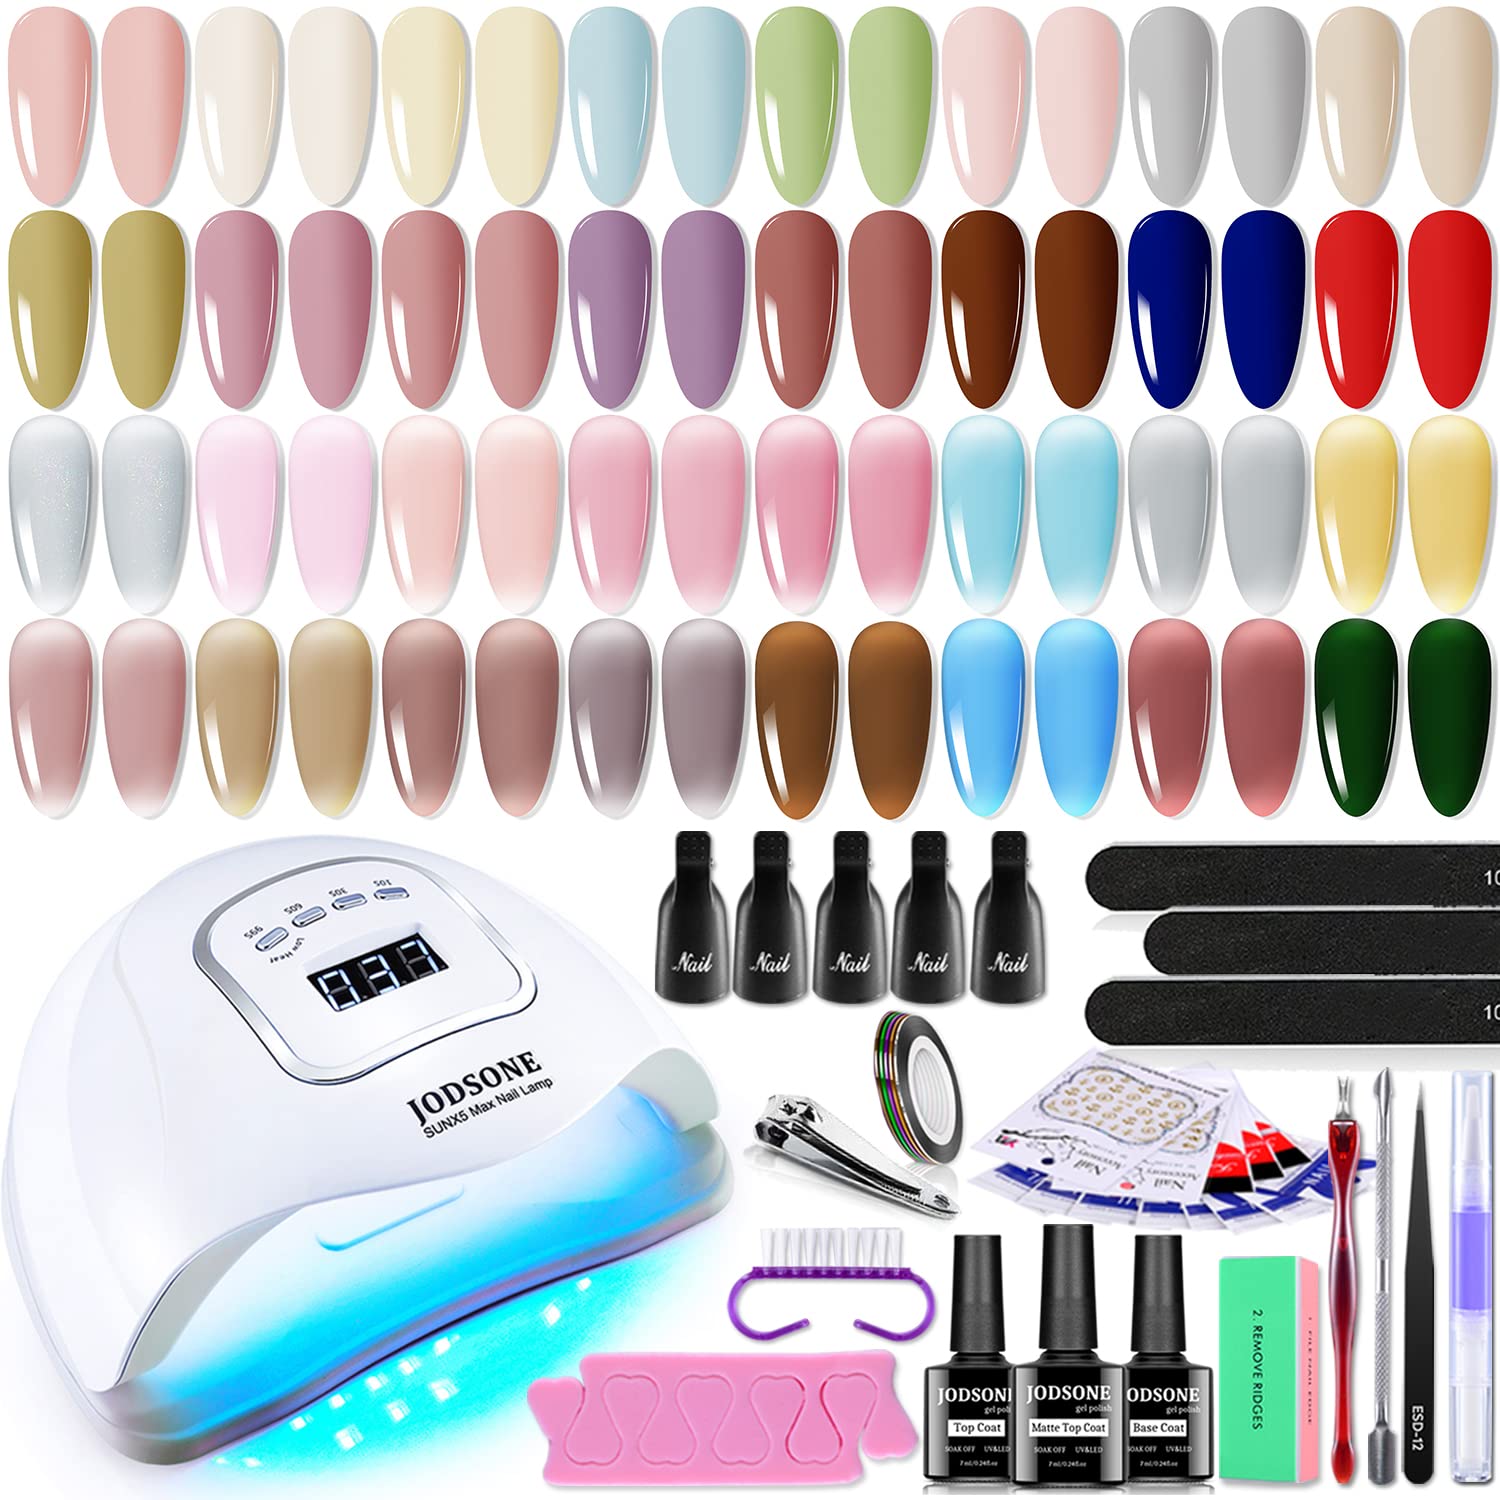 JODSONE UV Lamp & Assorted Colors Matte Nail Polish Kit